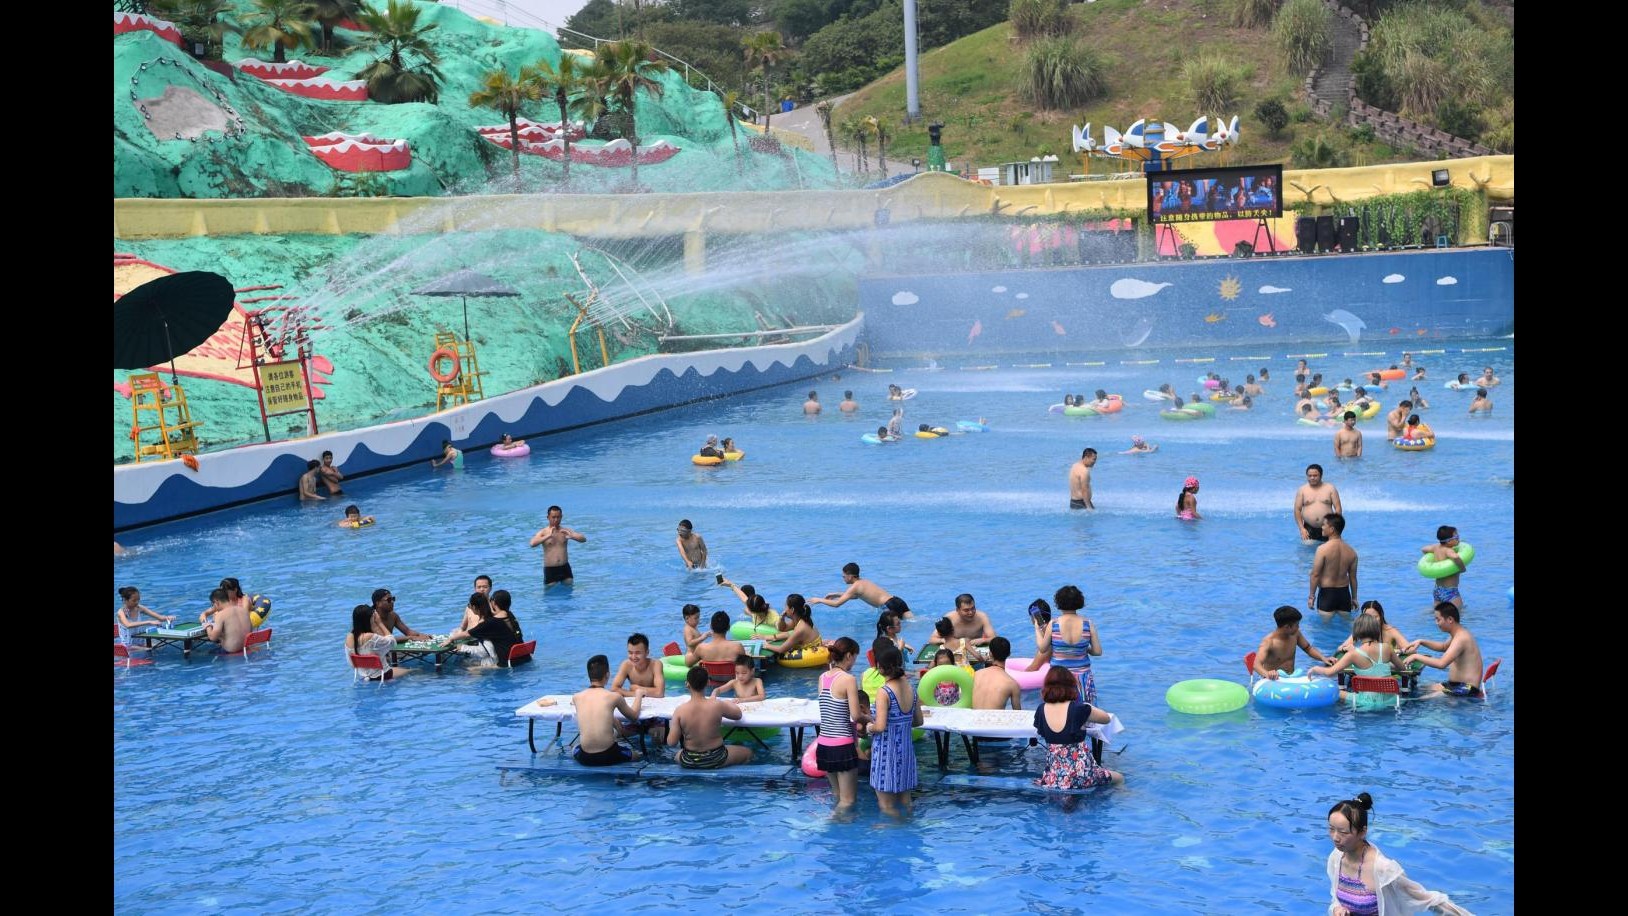 Cina, temperature oltre i 40 gradi: i giochi da tavolo si fanno in acqua